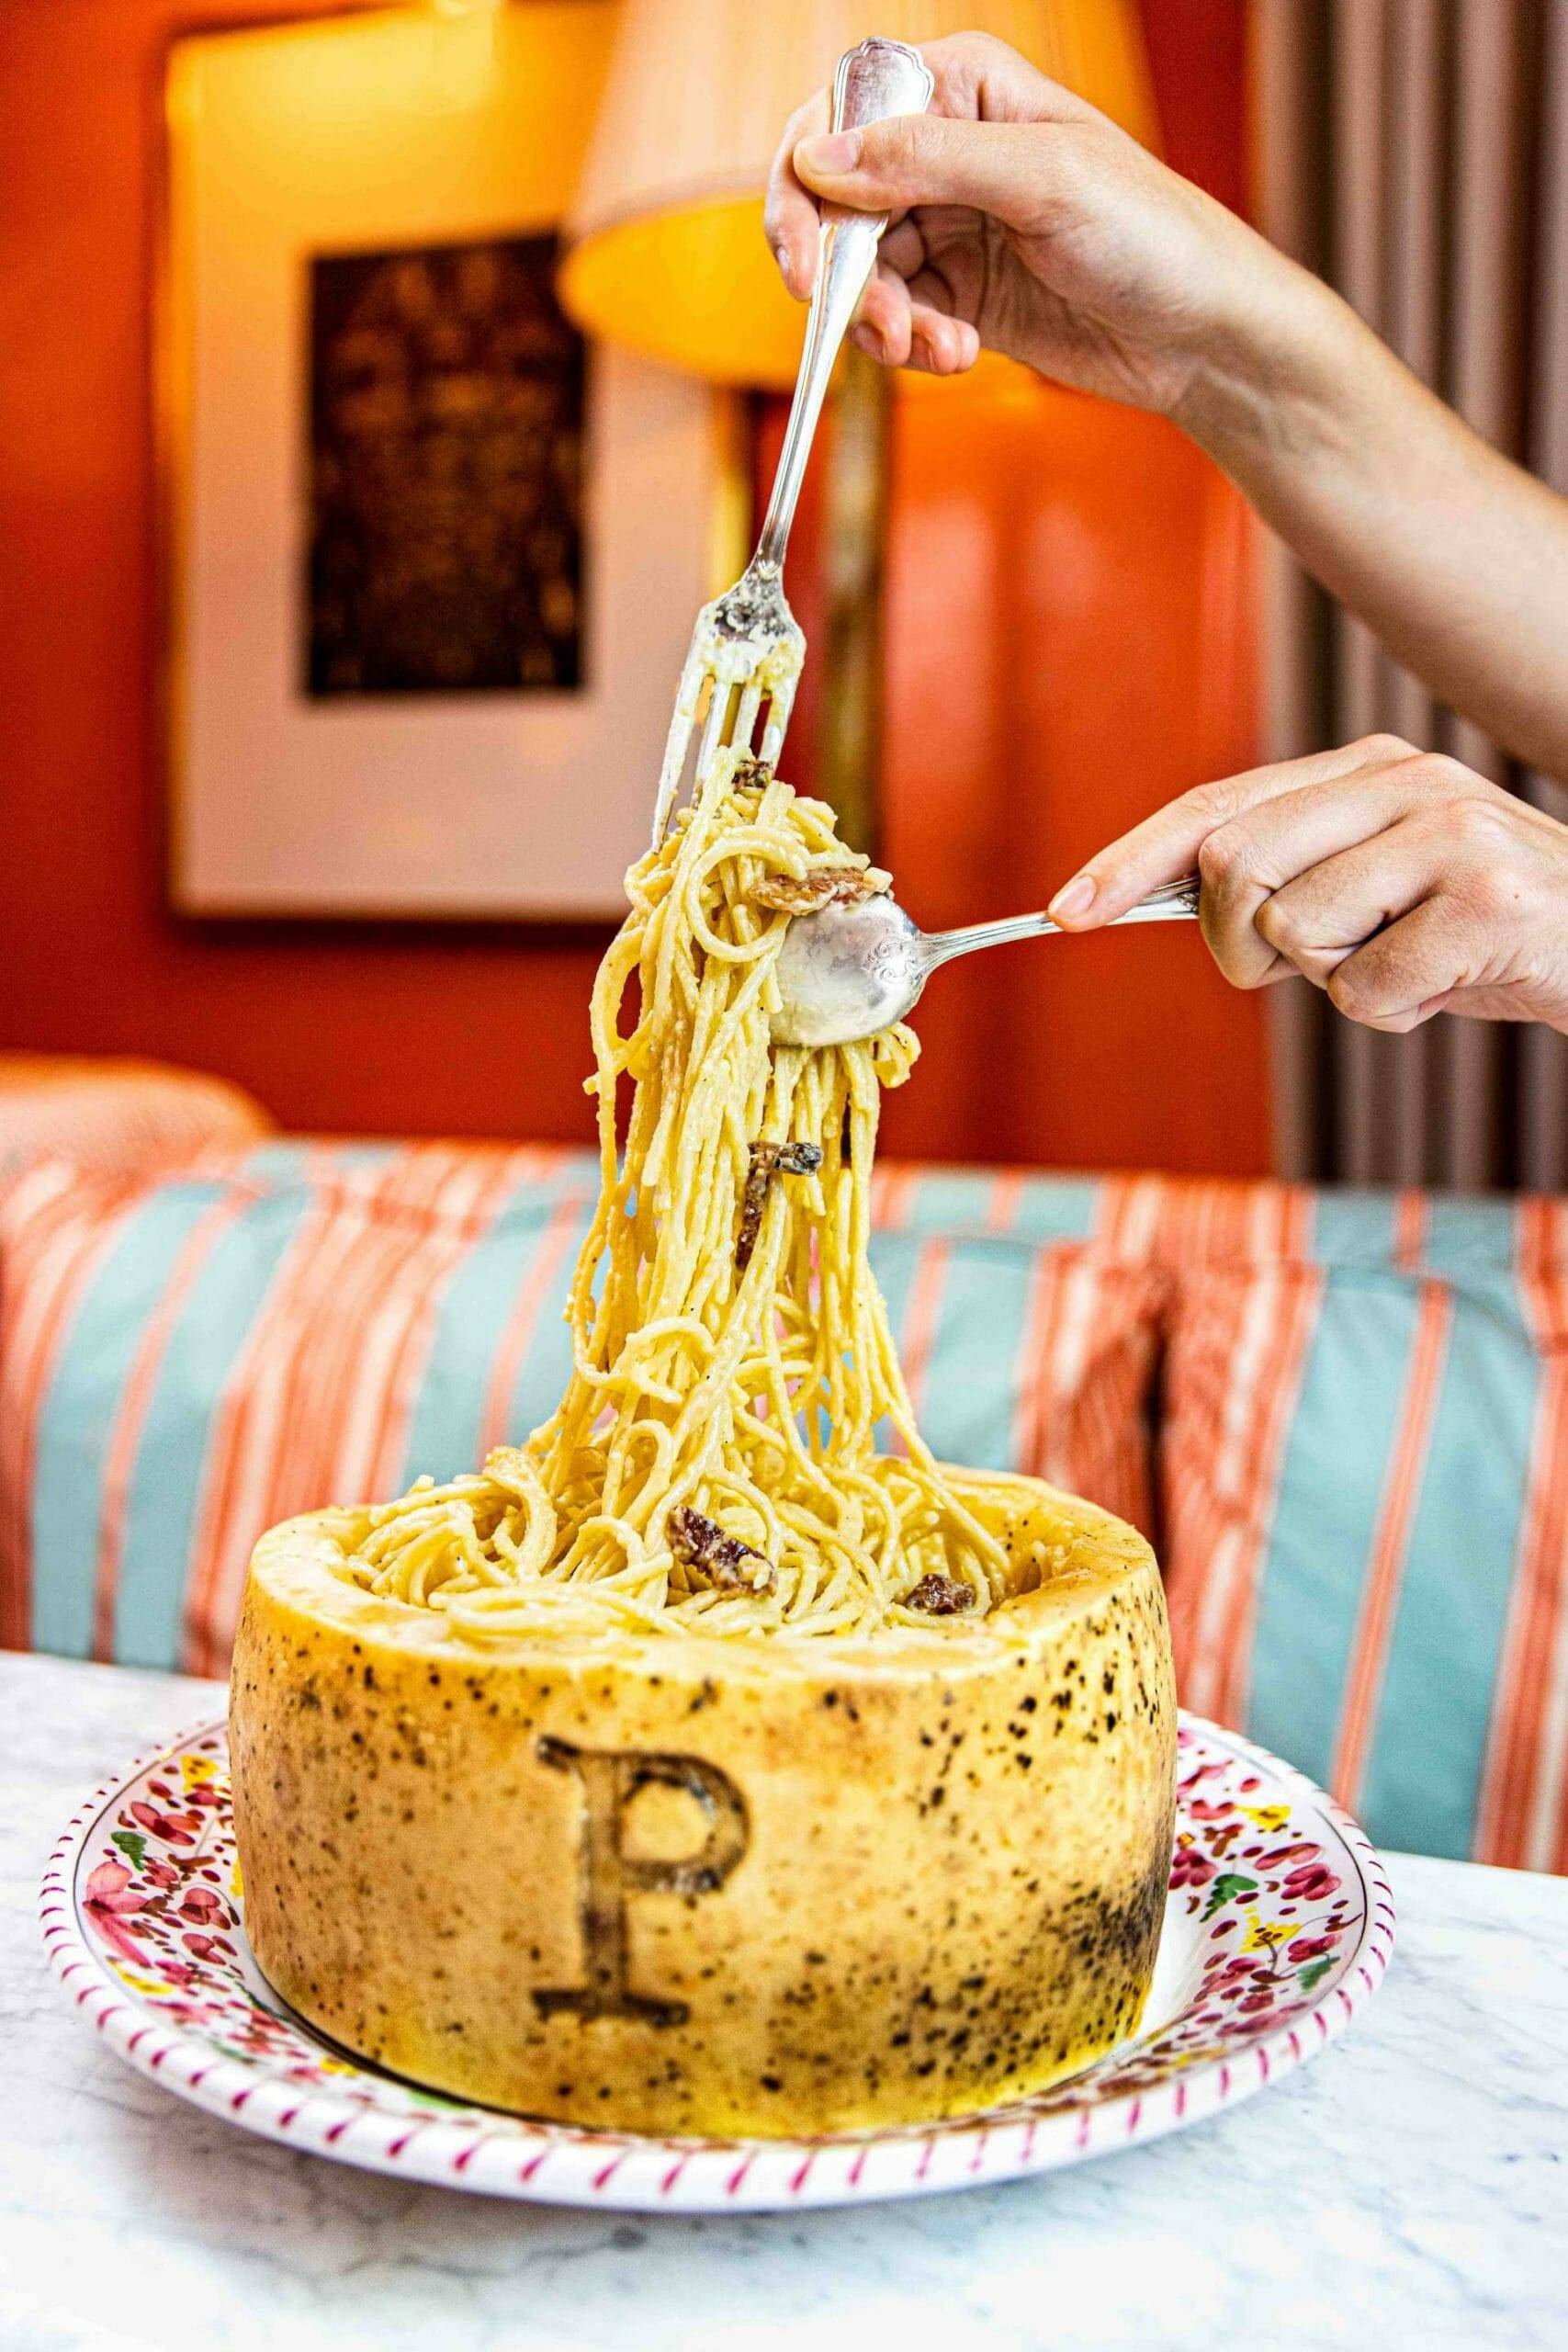 La carbonara en la rueda de queso es el plato que triunfa en instagram. Foto: ©Sophie Chanimbaud